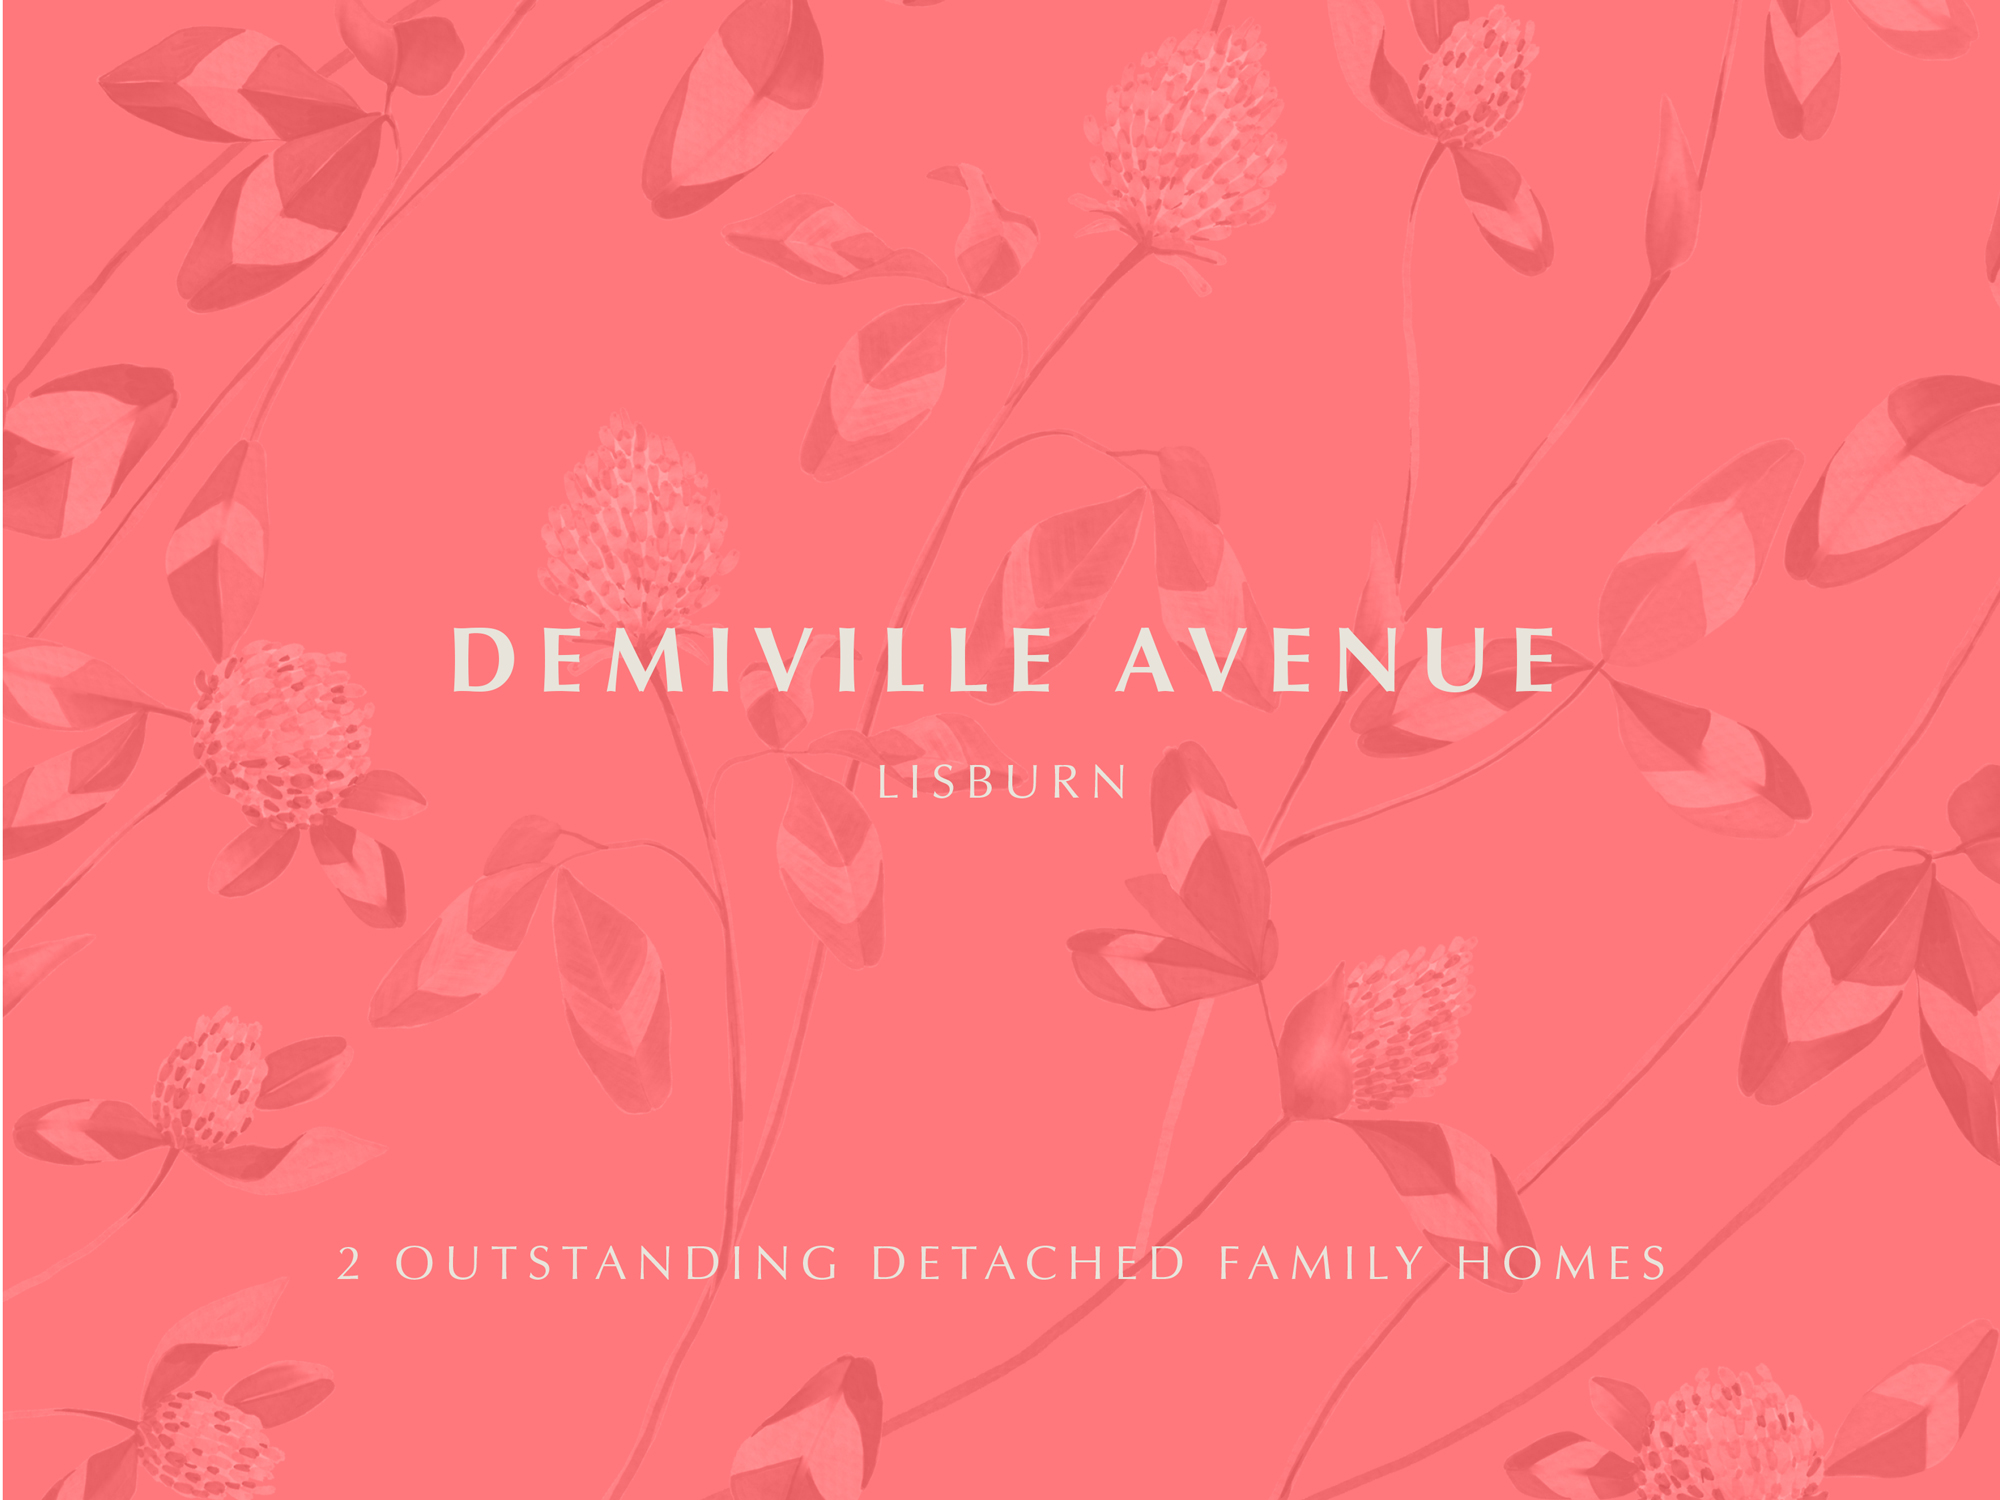 Demiville Avenue